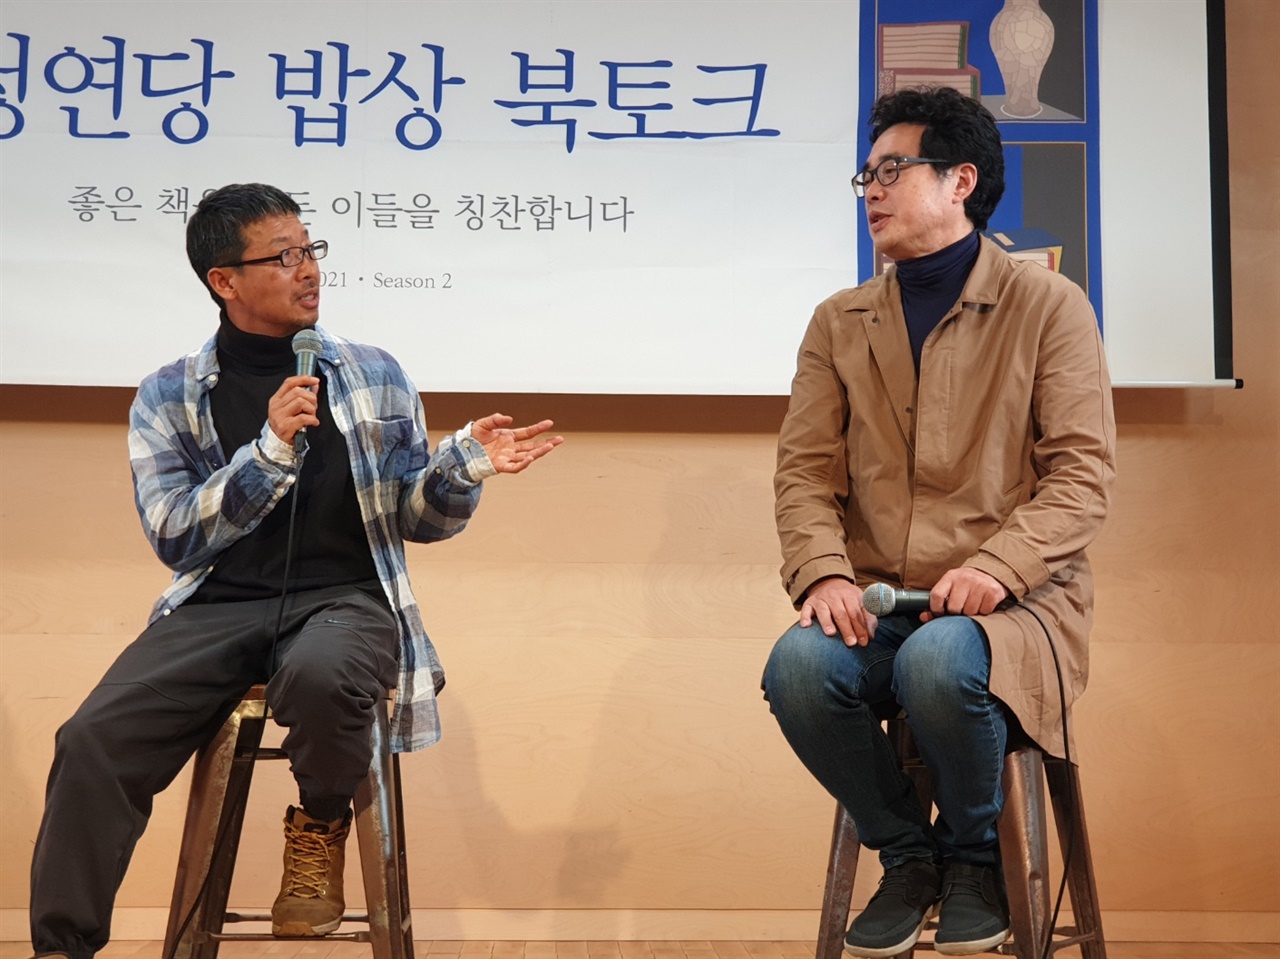 위원석 편집자는 "빛나는 만화가"라며 김홍모 만화가에 대해 "만화의 대중적인 삶과 진실성에 깊이 고민하는 그가 있어 다행이며 기대되는 작가"라고 평가했다.